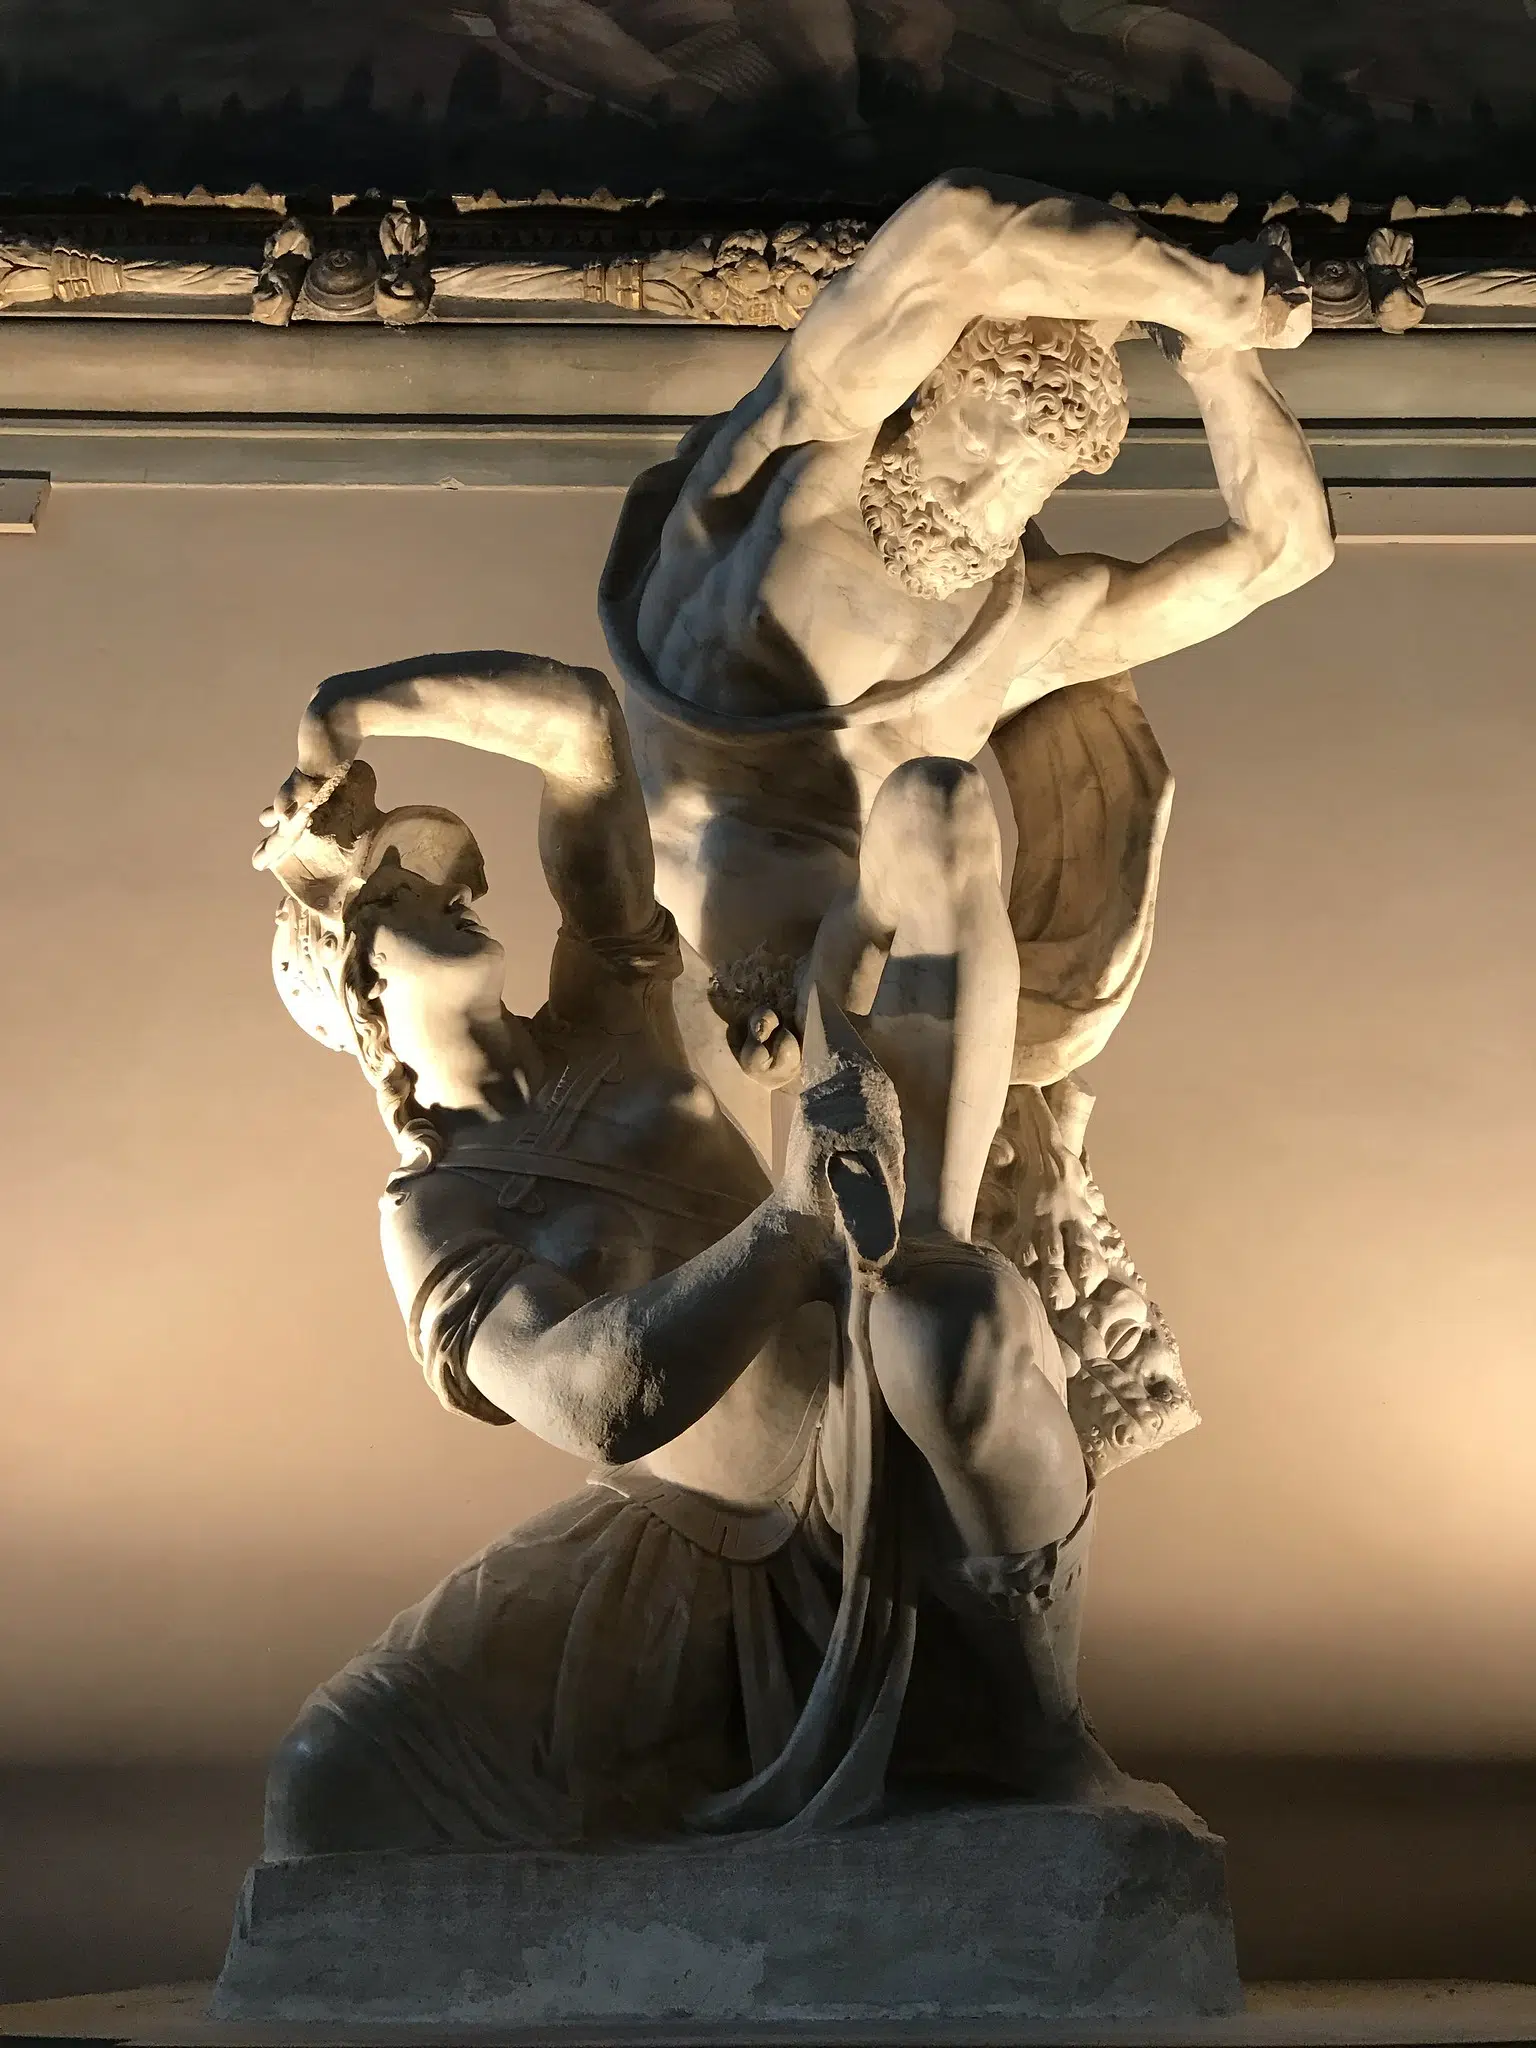 Hercules and the Amazon Queen Hippolyte by Vincenzo de' Rossi, Salone dei Cinquecento, Palazzo Vecchio. 